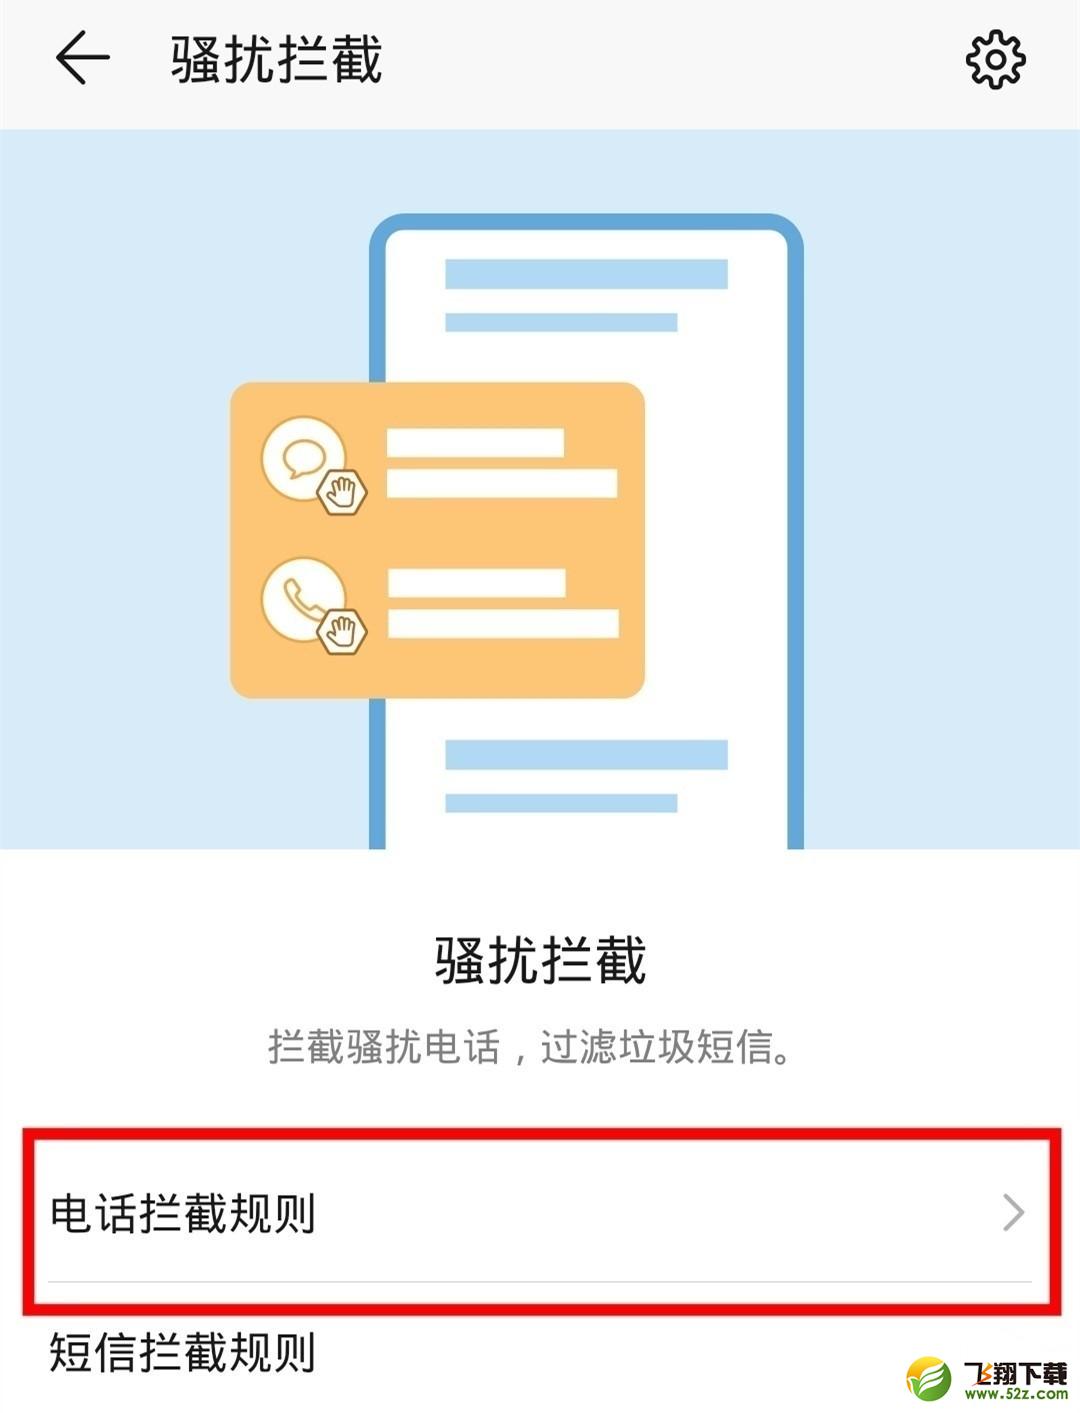 华为nova5z手机拦截骚扰电话方法教程_52z.com